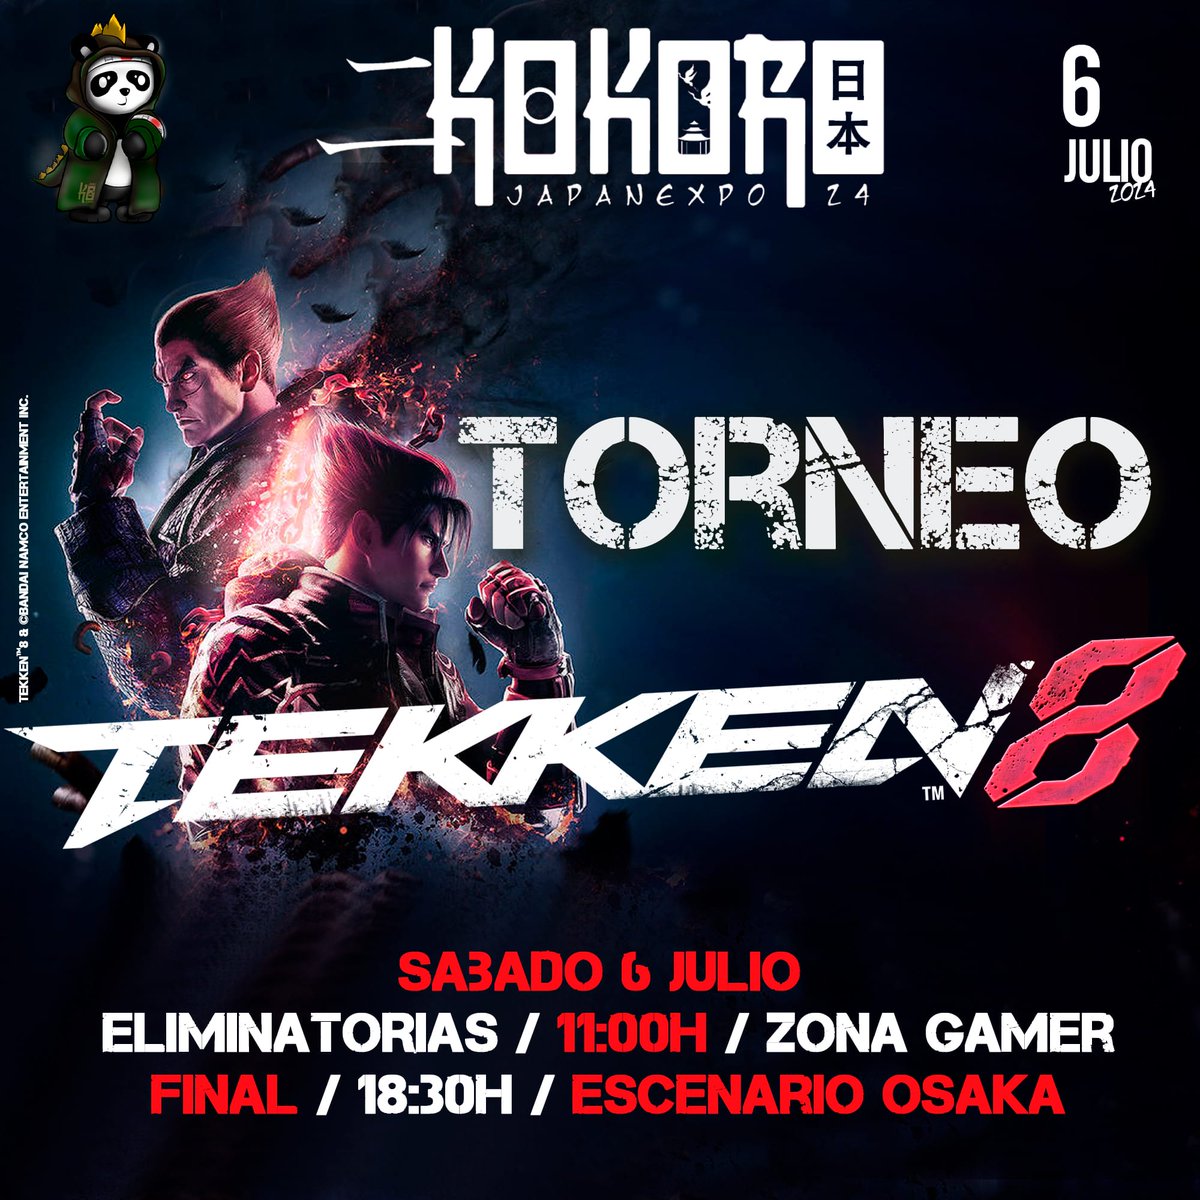 Hoy os traemos novedades para Julio! Estaremos en Kokoro Japan Expo organizando este torneo de Tekken 8!! Será Dojo y esperamos contar con todos vosotros! También queremos dar las gracias por todo a @BandaiNamcoES por el apoyo!! Nos vemos en Vigo!! #TWT2024 #GamingLife